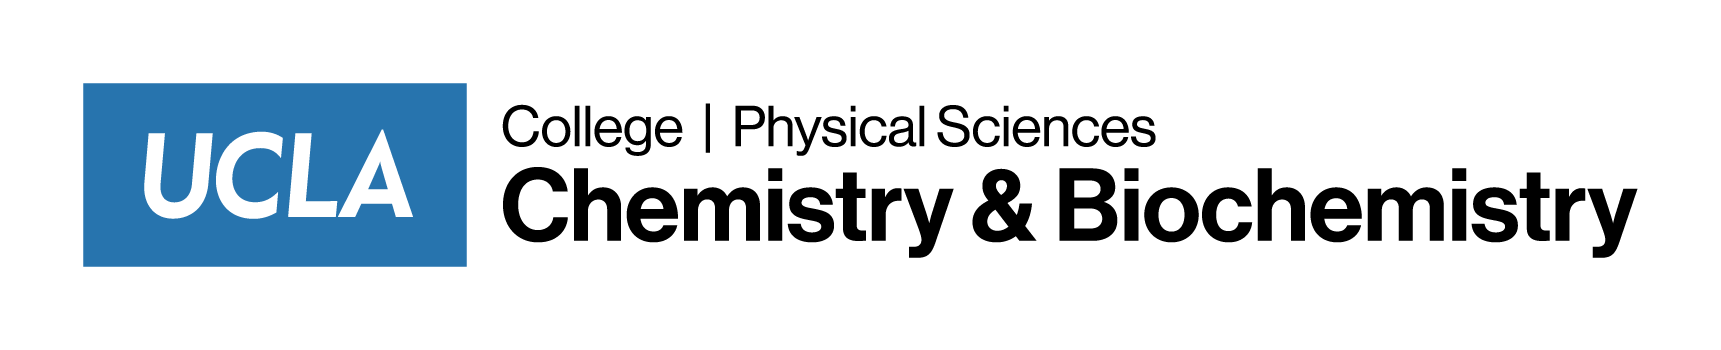 Chemistry & Biochemistry logo